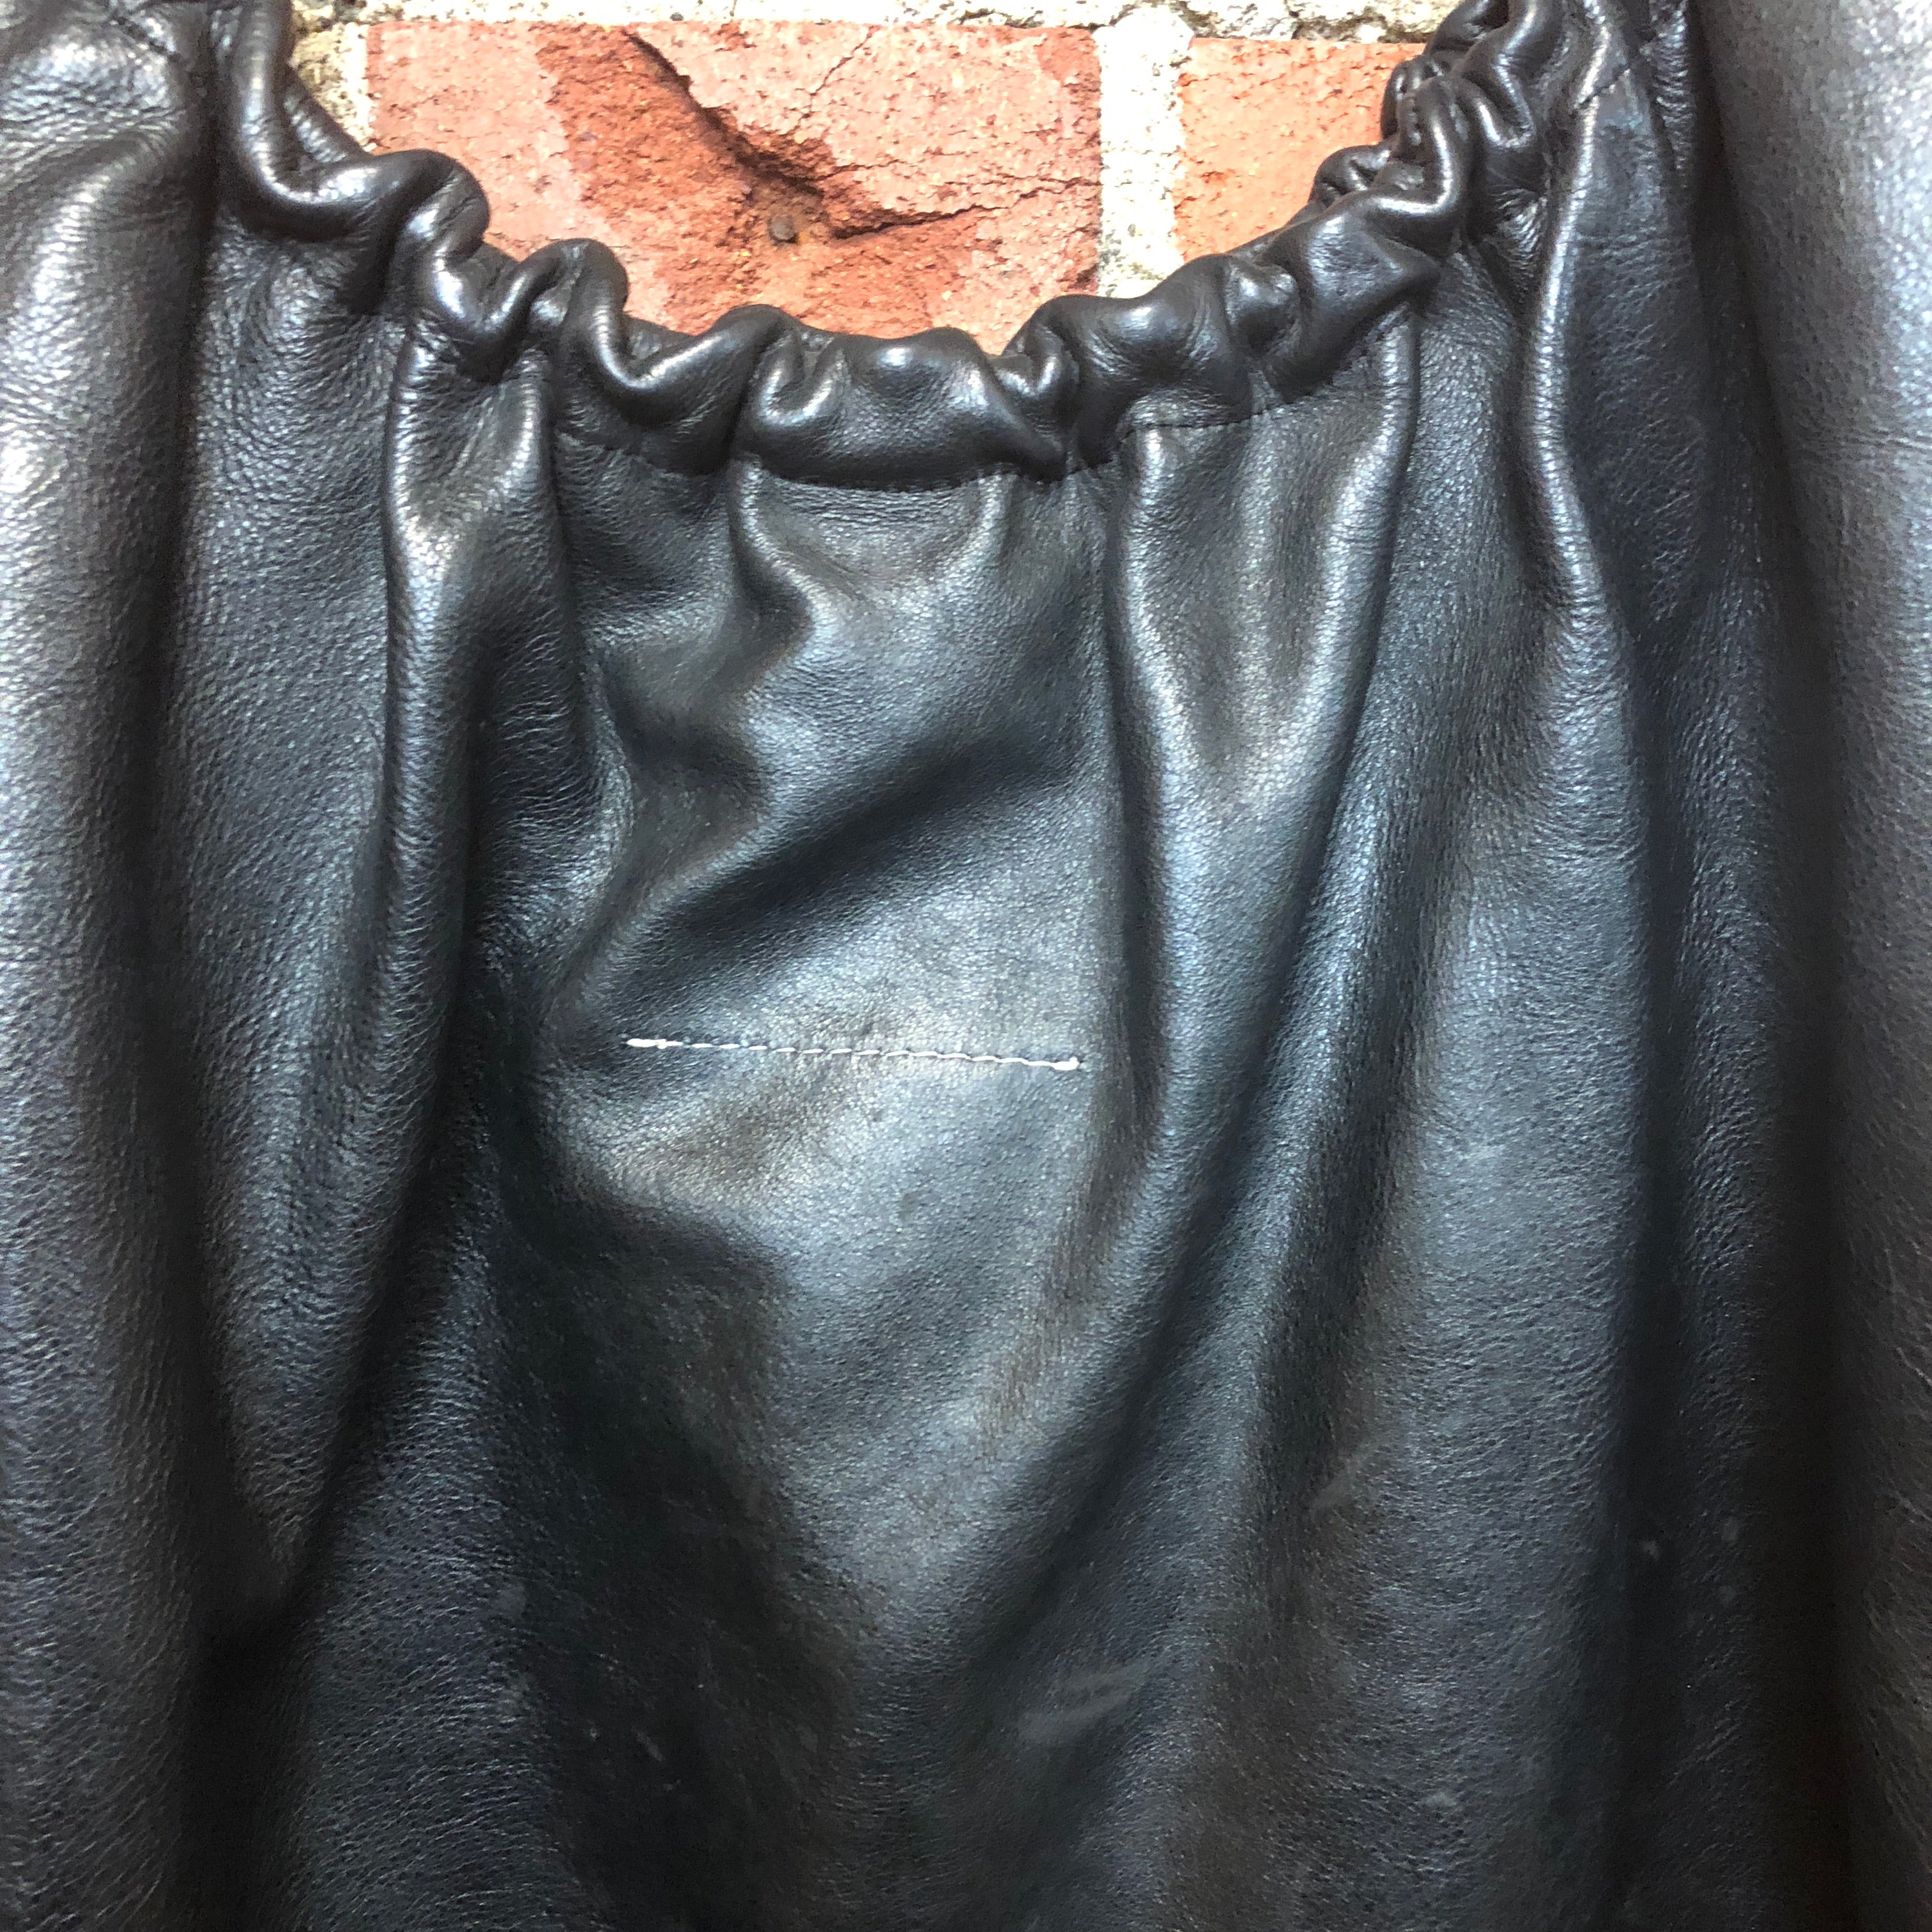 MARTIN MARGIELA leather hoop 2000s handbag